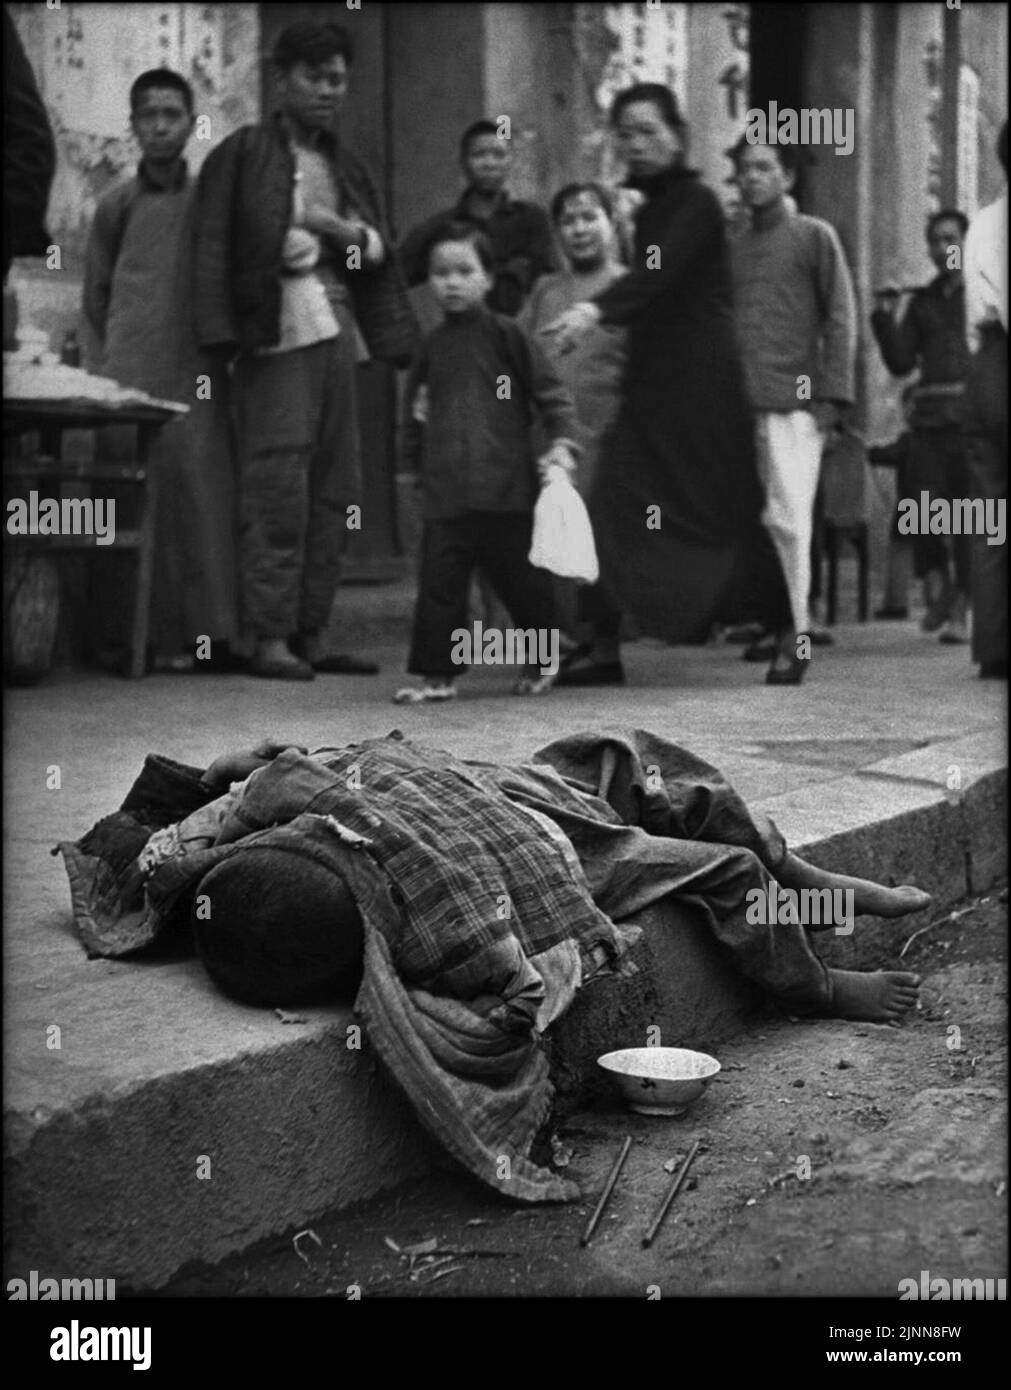 Une image herbeuse prise par George Silk, un enfant abandonné qui meurt dans la rue pendant que la foule regarde. L'image a été prise pendant la famine en Chine en 1946 Banque D'Images